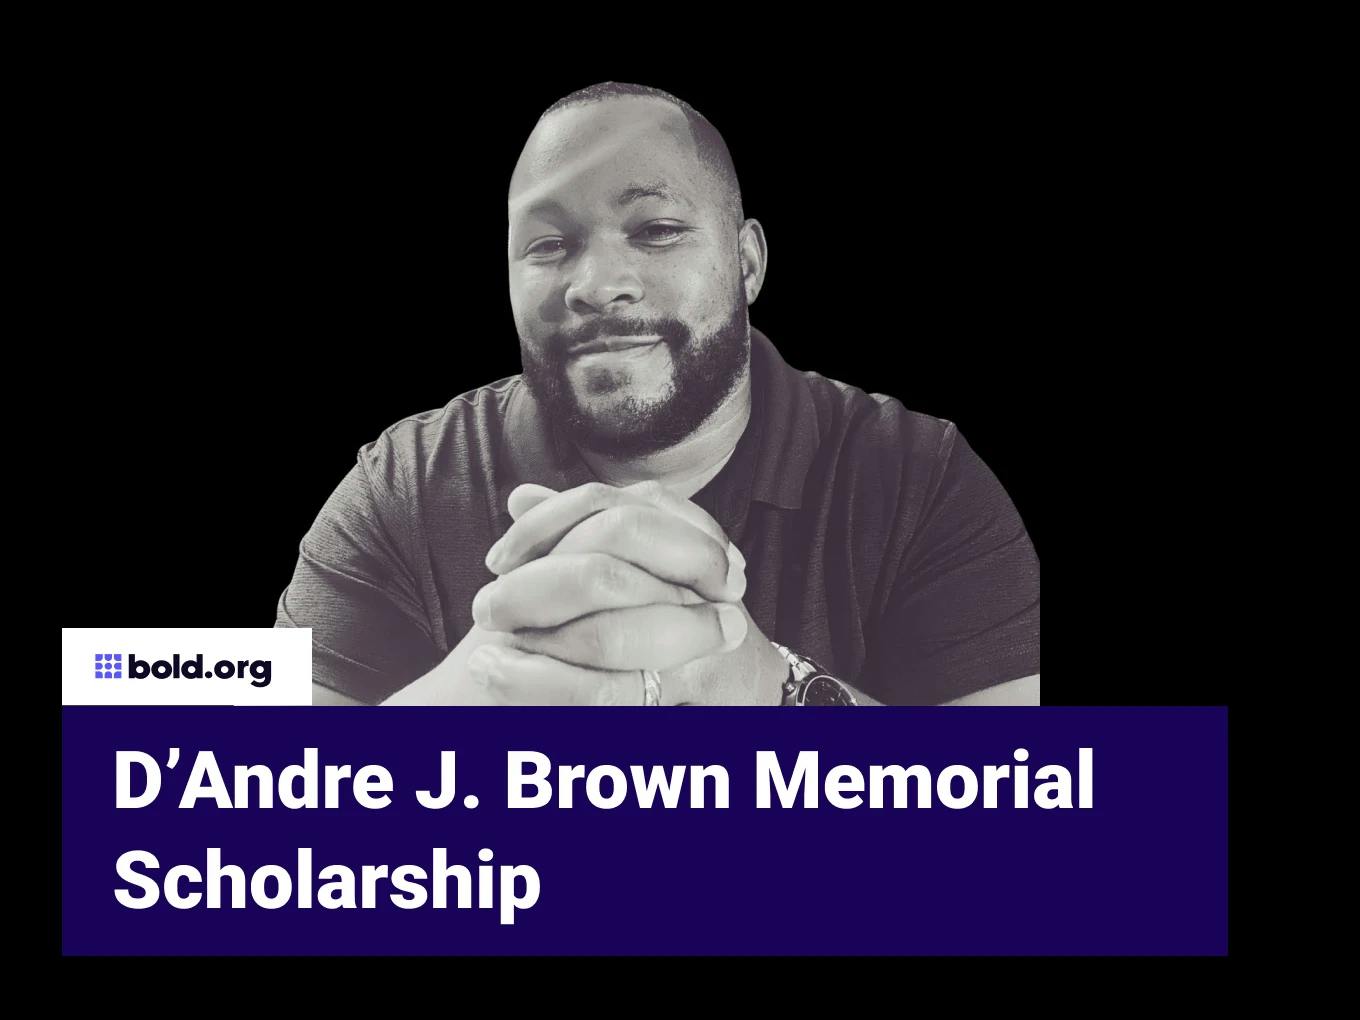 D’Andre J. Brown Memorial Scholarship